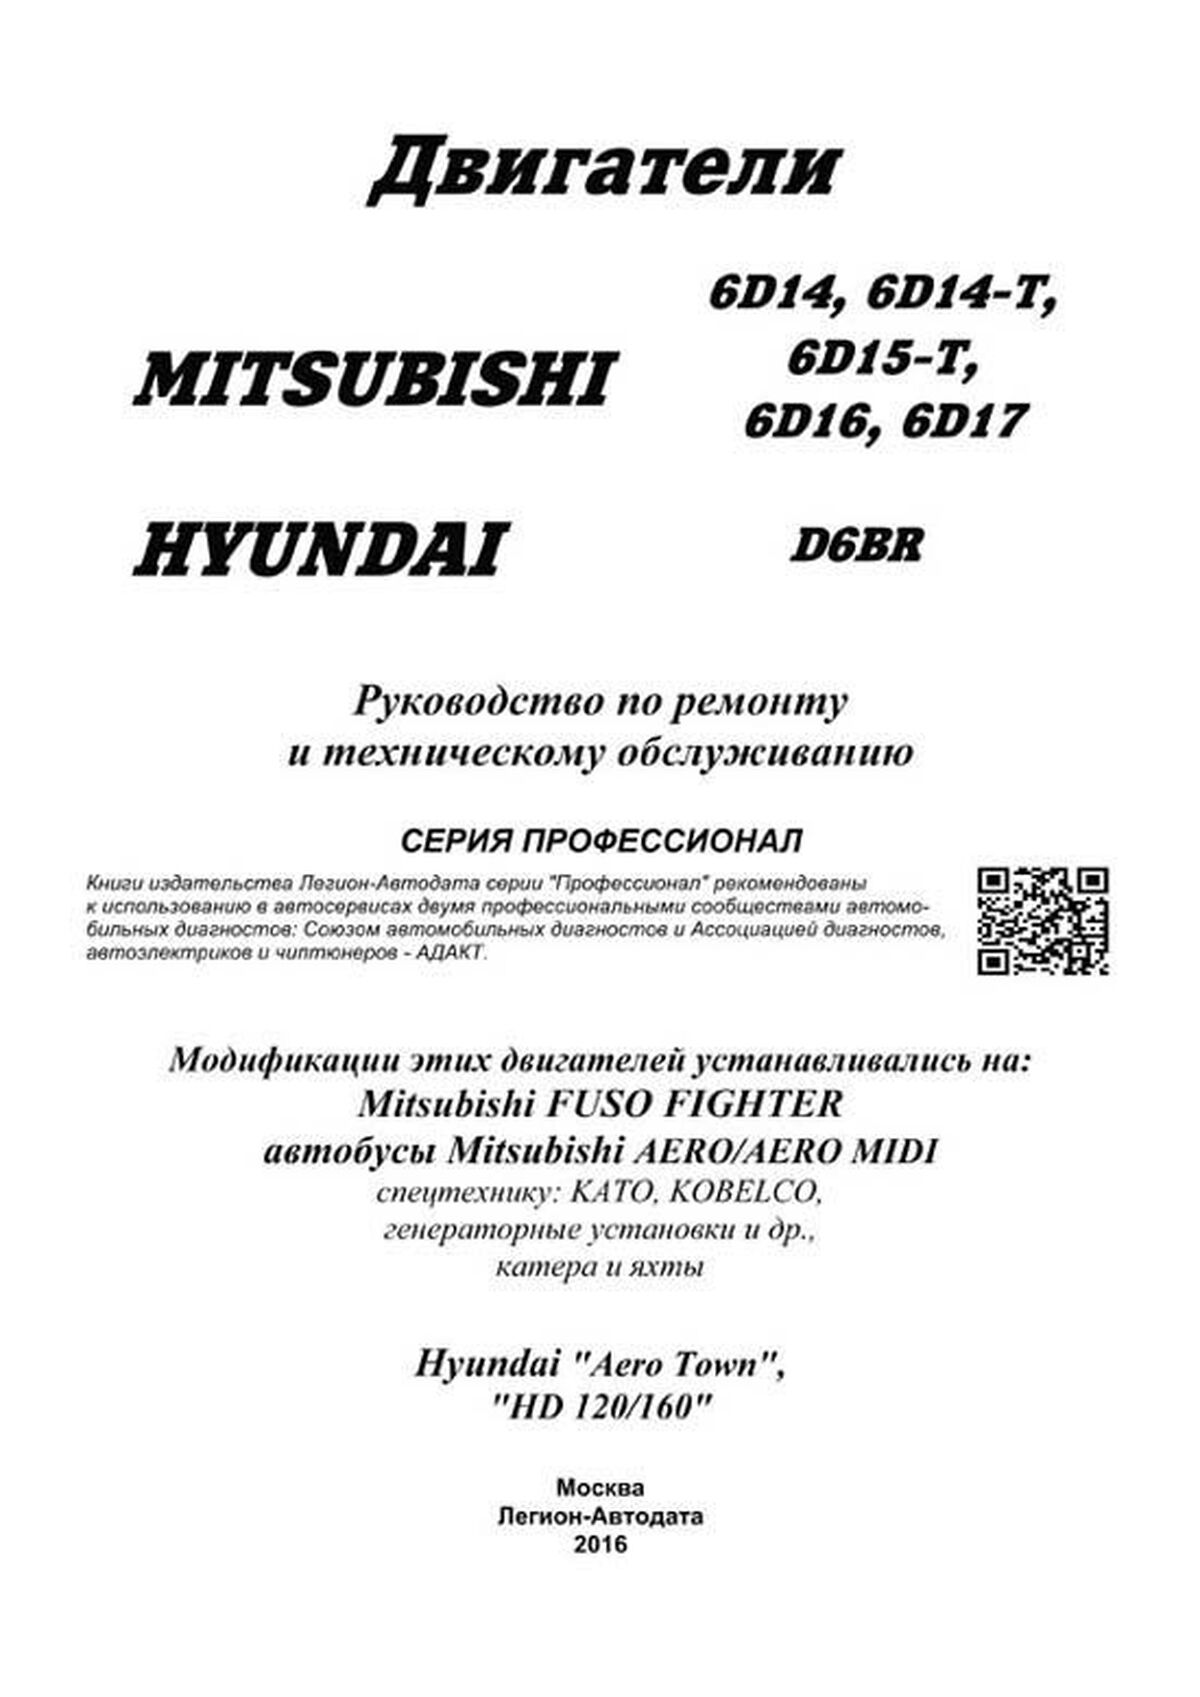 Книга: Двигатели MITSUBISHI (6D14 / 6D14-T / 6D15-T / 6D16 / 6D17) / HYUNDAI (D6BR) (д) | Легион-Aвтодата